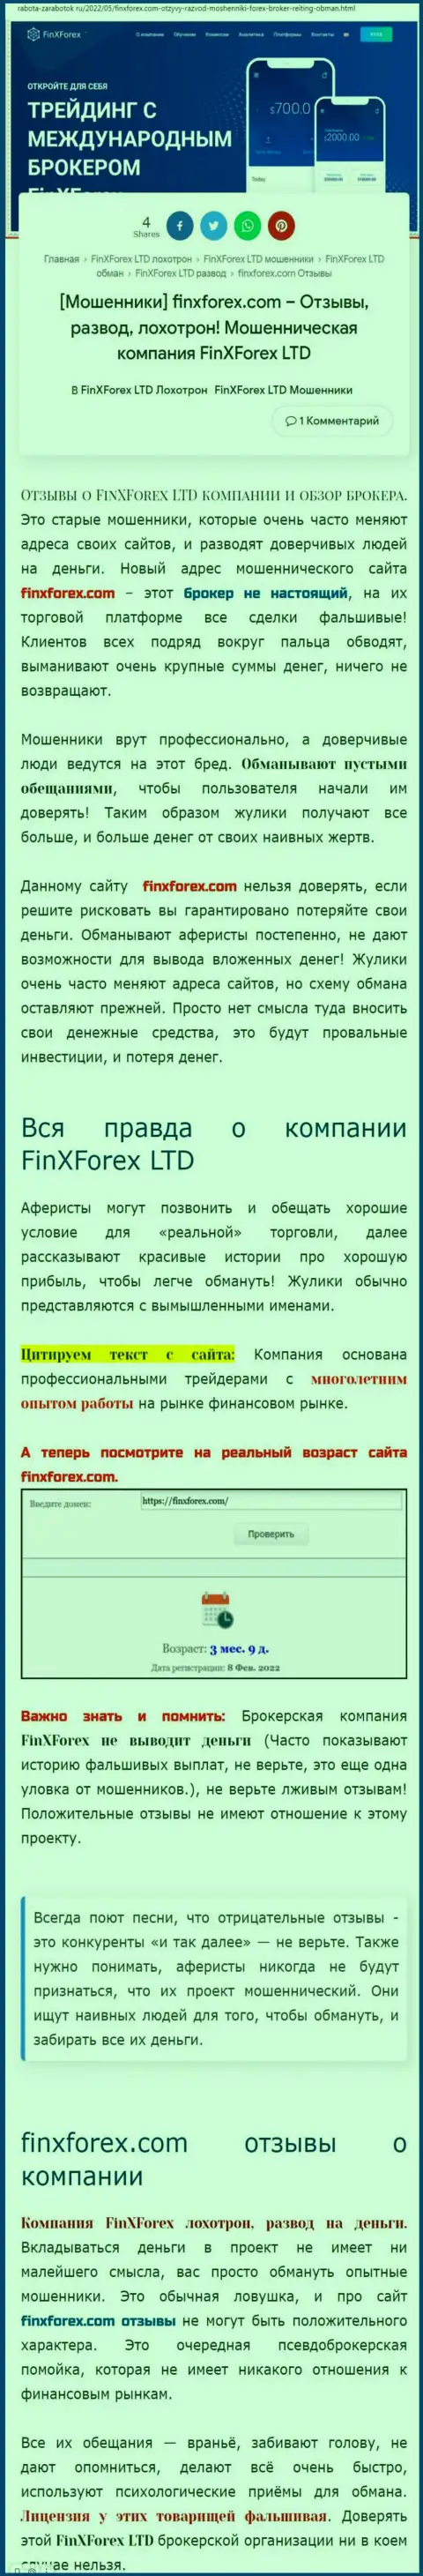 Автор публикации о FinXForex утверждает, что в конторе FinXForex обманывают